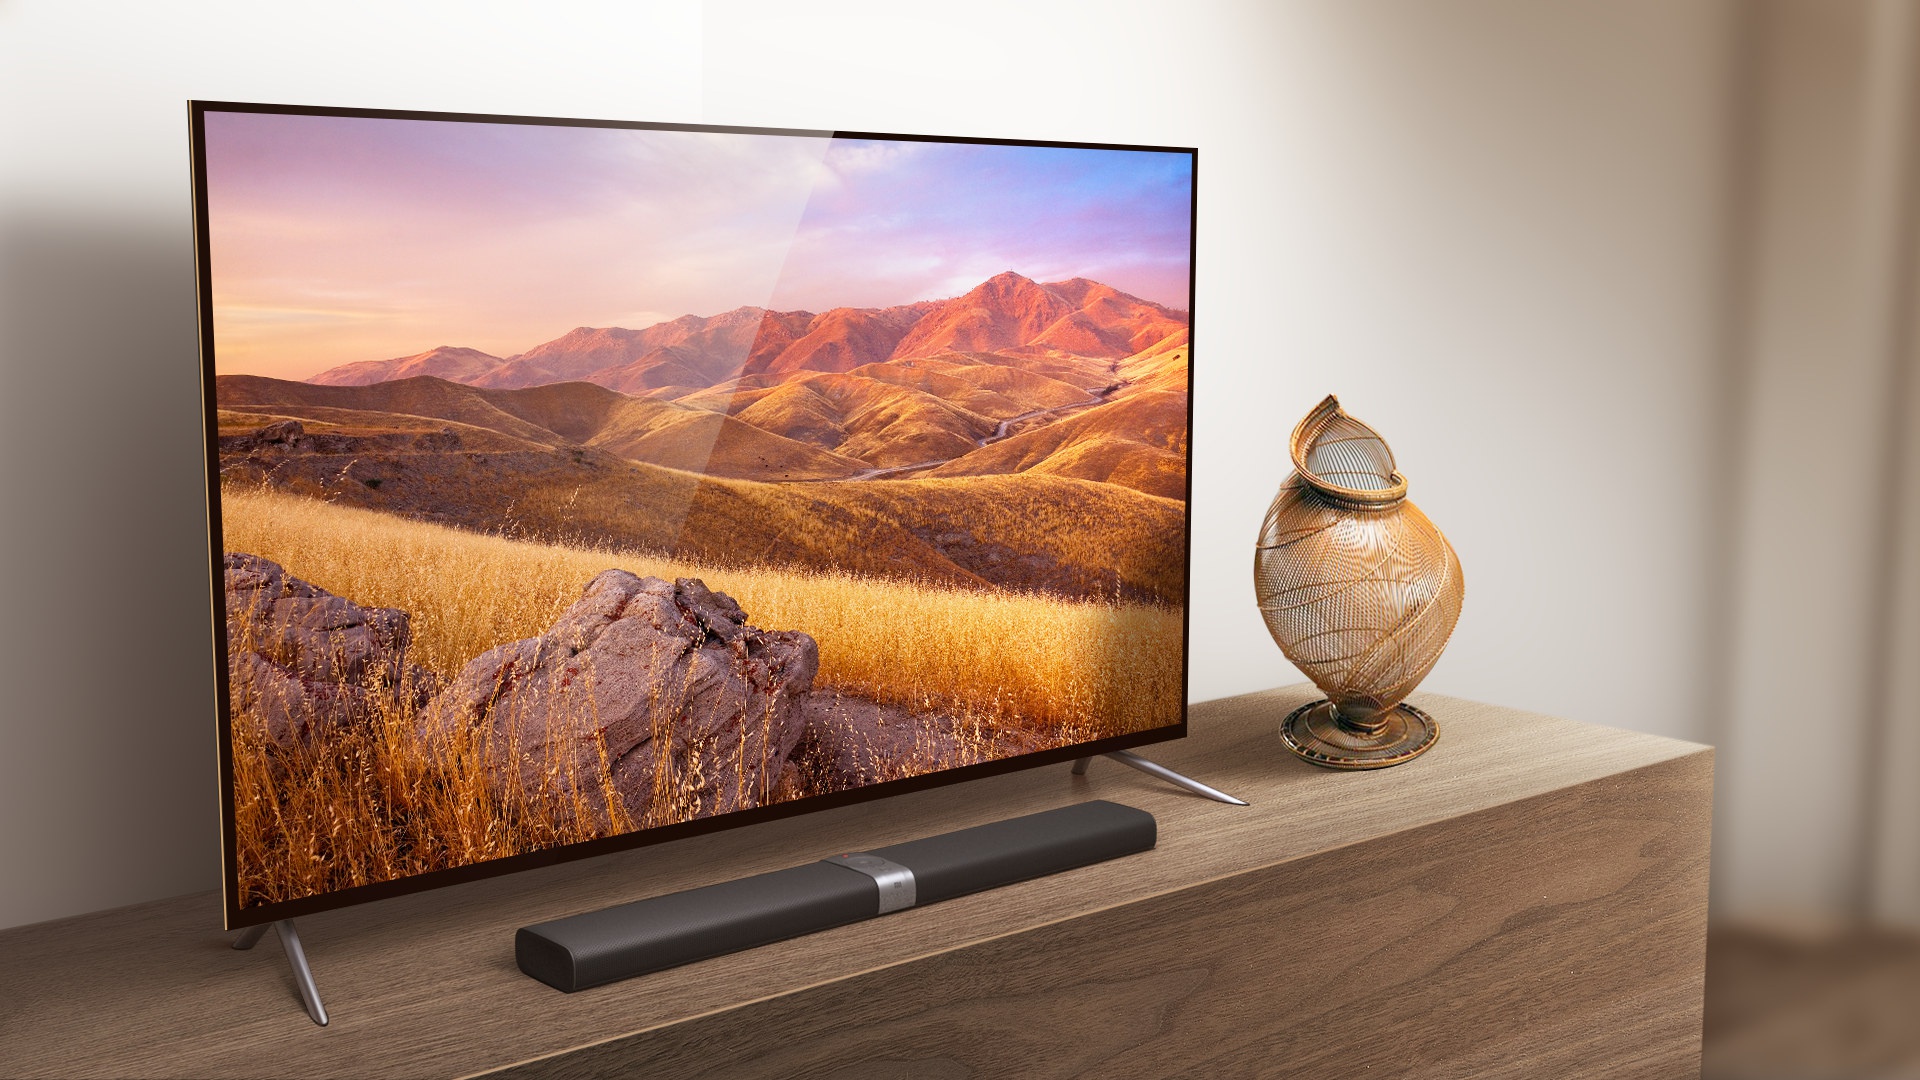 Телевизор xiaomi купить в спб. Xiaomi mi TV 4s 65. Xiaomi mi TV s65 телевизор.